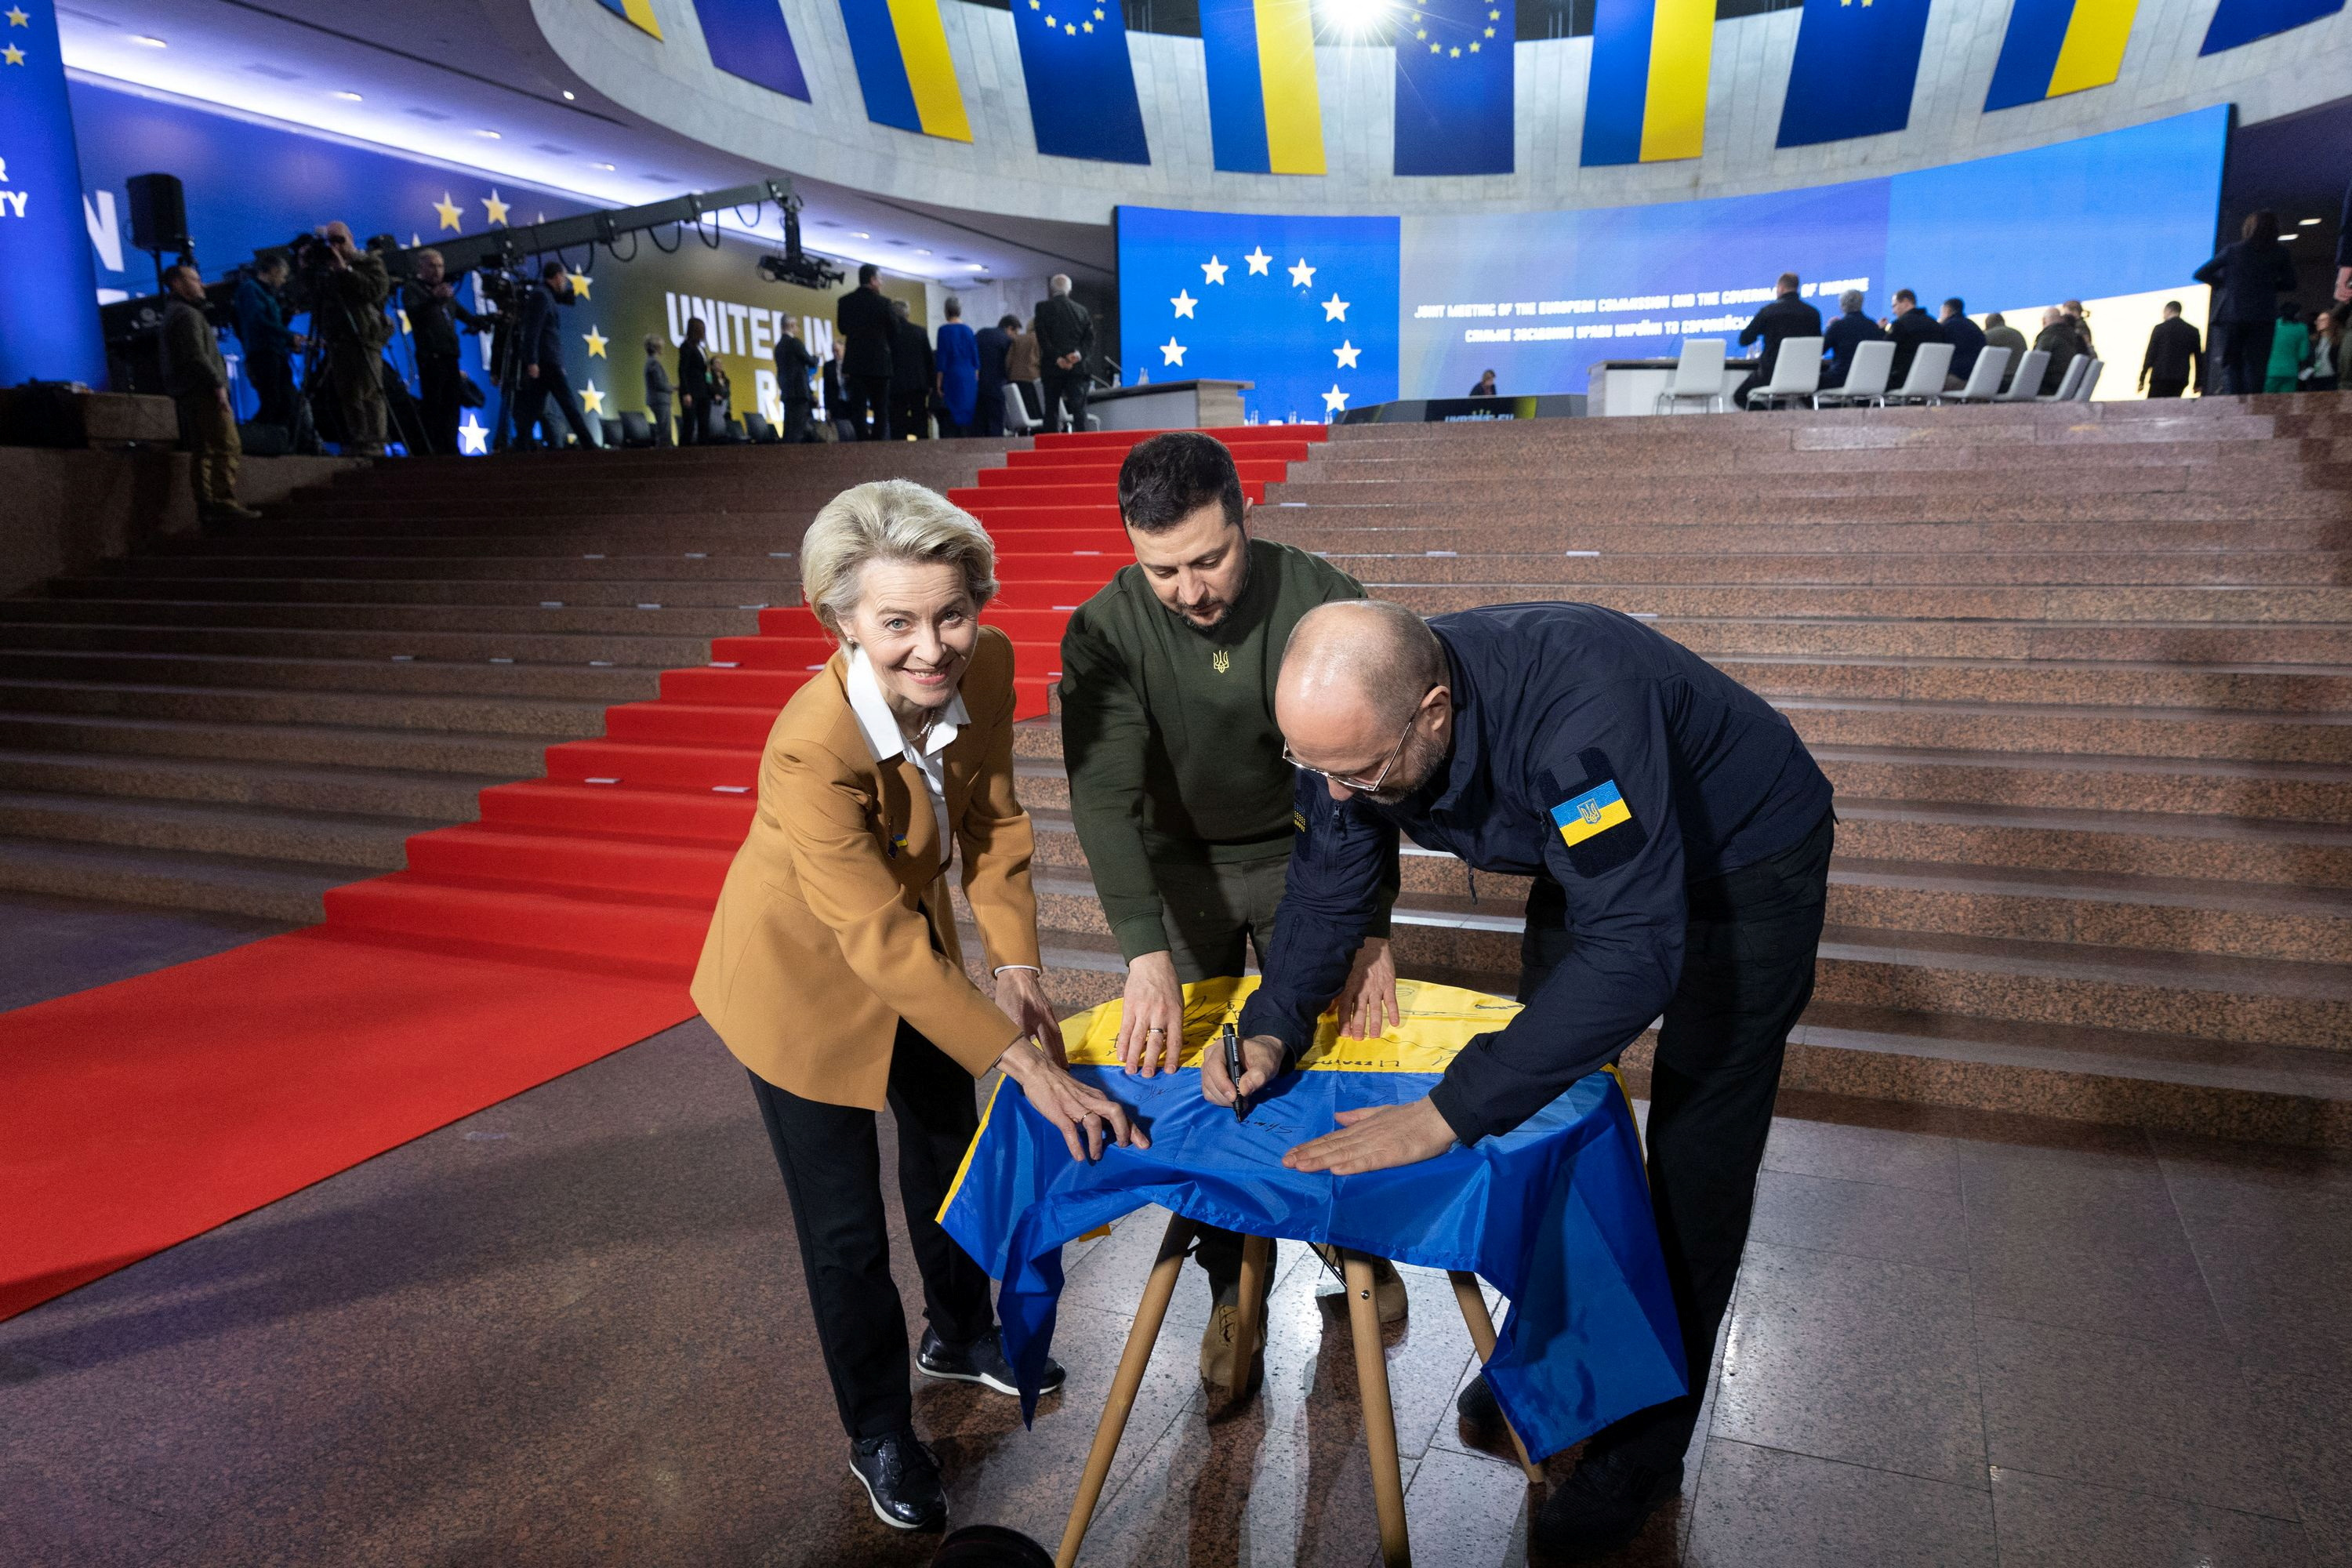 Se espera la presencia del presidente del Consejo Europeo, Charles Michel, para las discusiones que incluirán la ruta de adhesión de Ucrania a la UE, un proceso que las autoridades de Kiev quieren acelerar. (REUTERS)